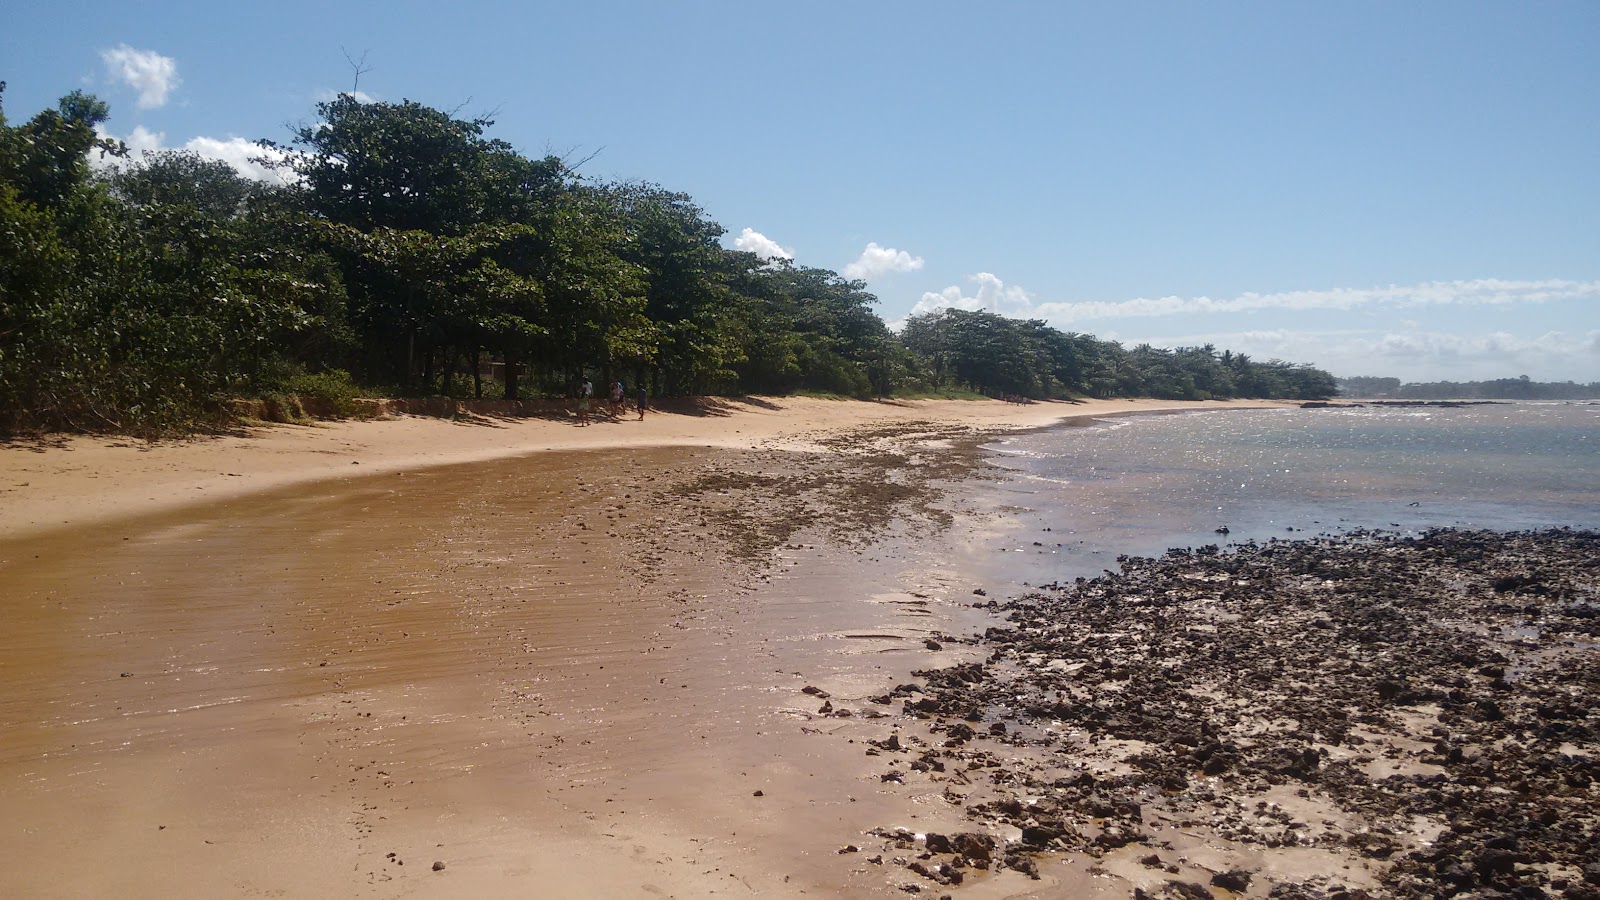 Foto av Enseada stranden - populär plats bland avkopplingskännare